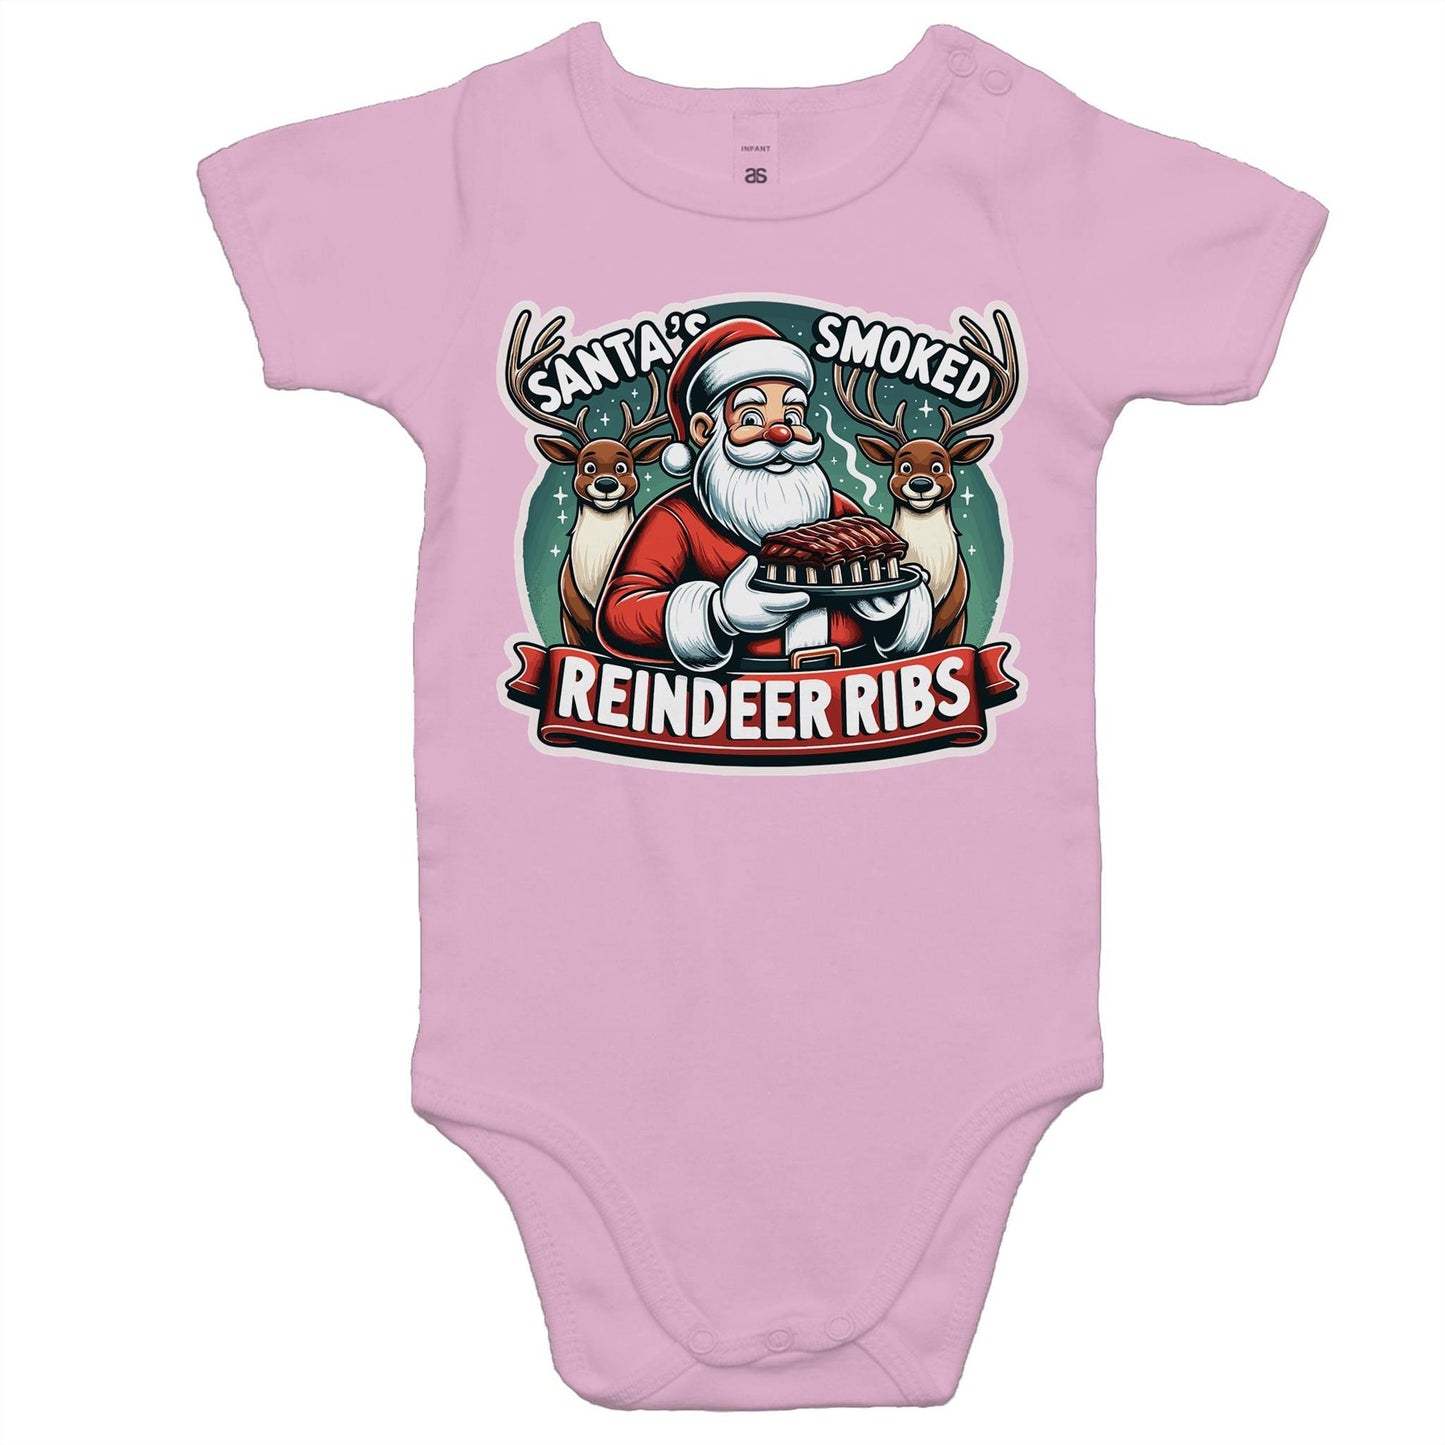 Santa's Smoked Reindeer Ribs - Baby Onesie Romper